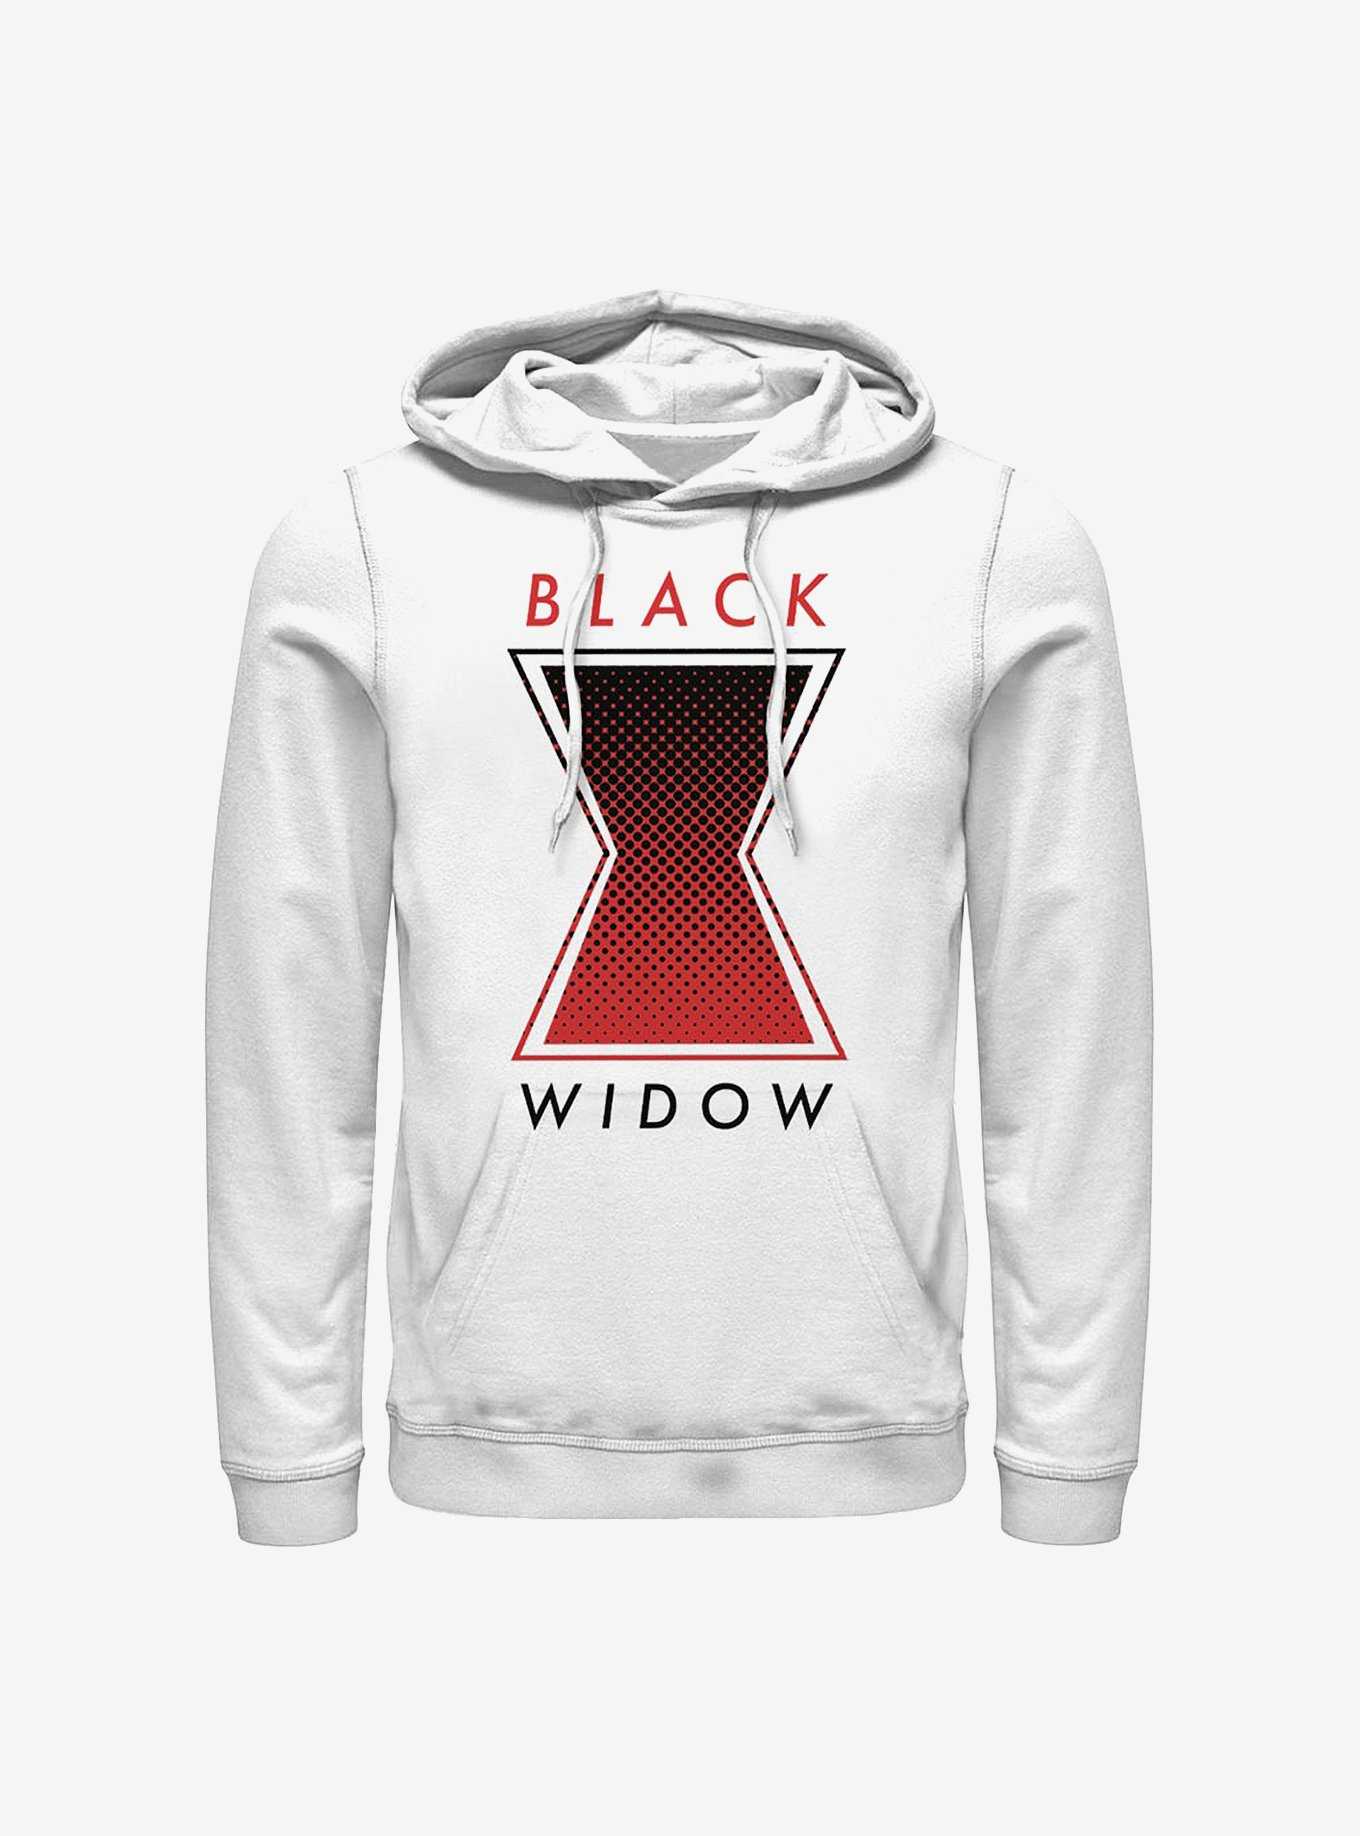 Marvel Black Widow Haftone Symbol Hoodie, , hi-res